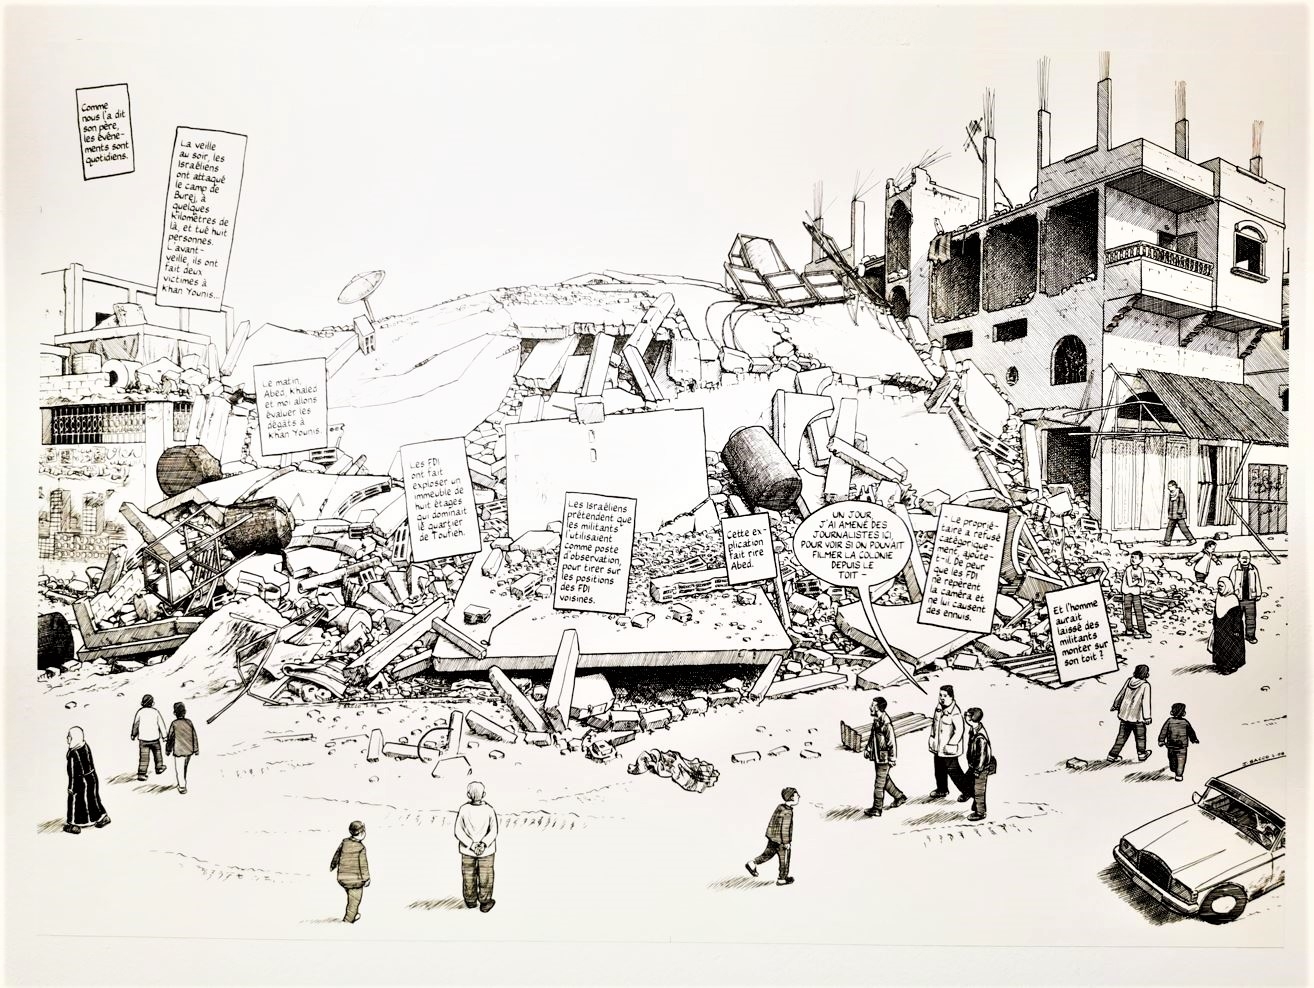 Page de l'album Gaza 56 de Joe Sacco, où l'on voit une ville détruite par un bombardement et les passants commenter l'amas de ruines.